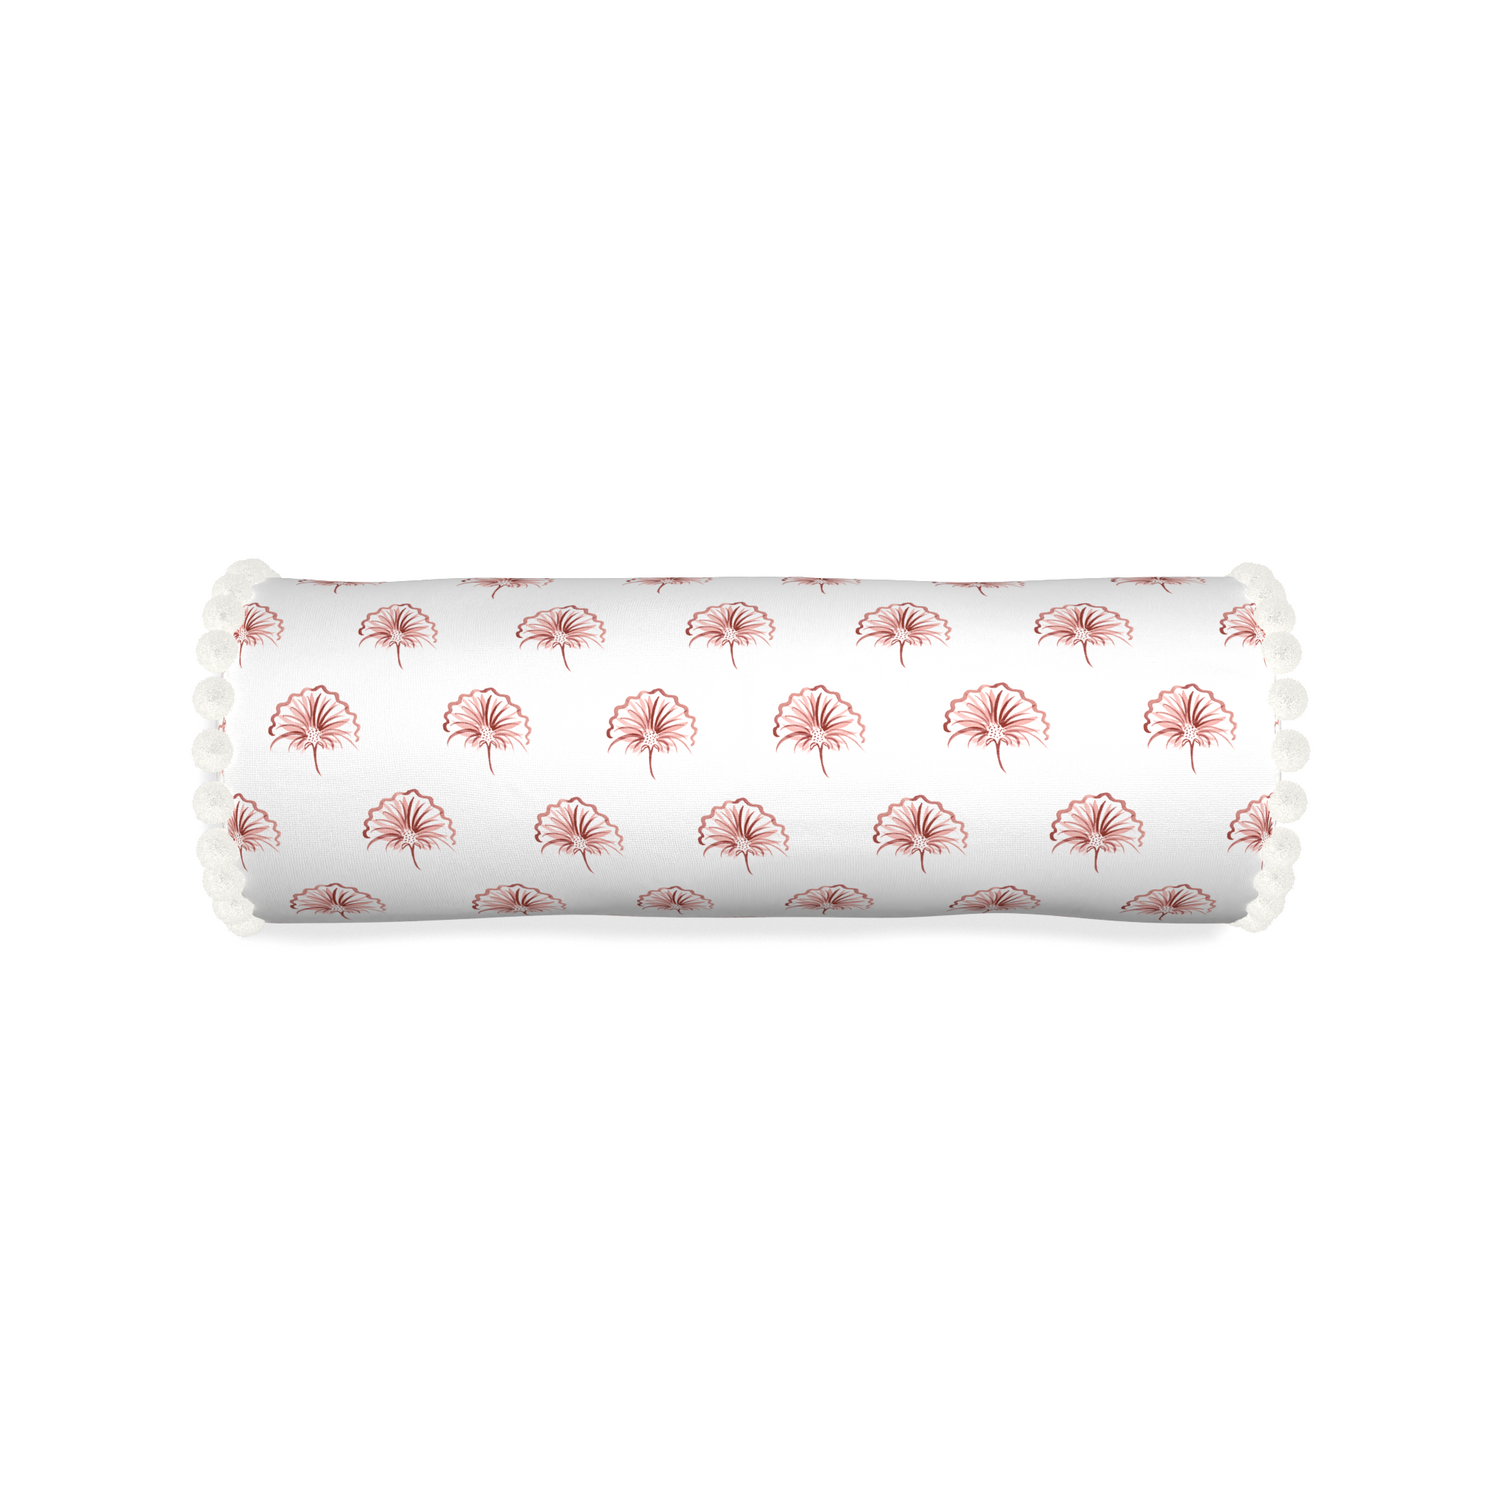 Bolster penelope rose custom pillow with snow pom pom on white background